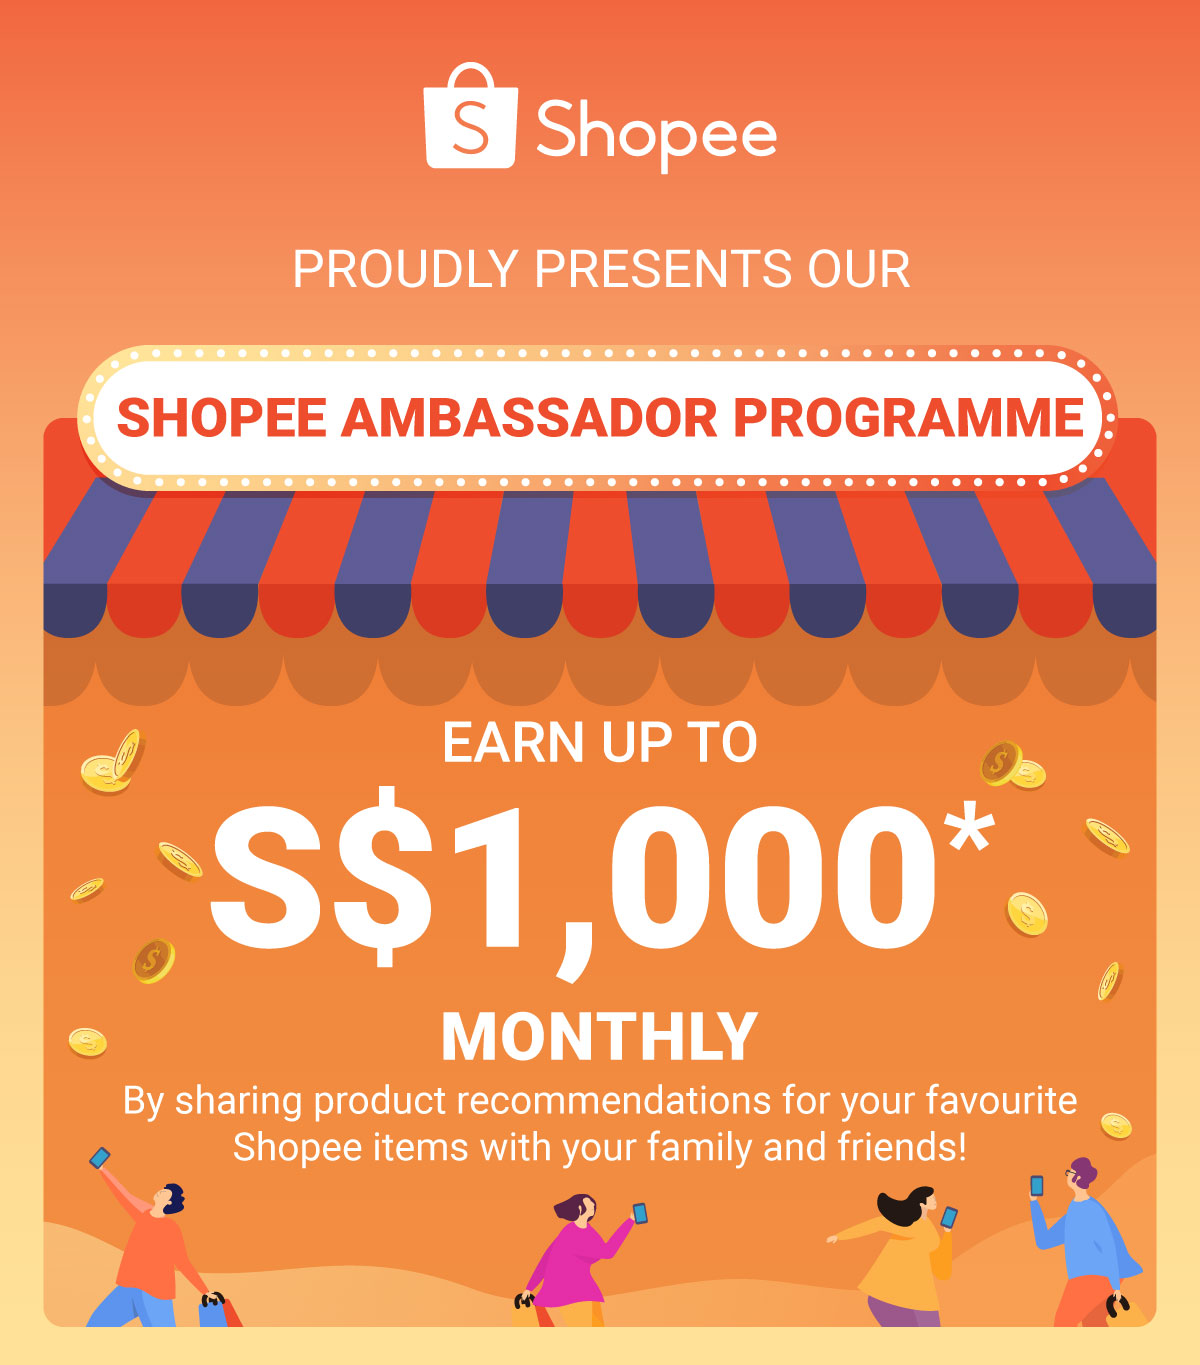 Shopee ambassador